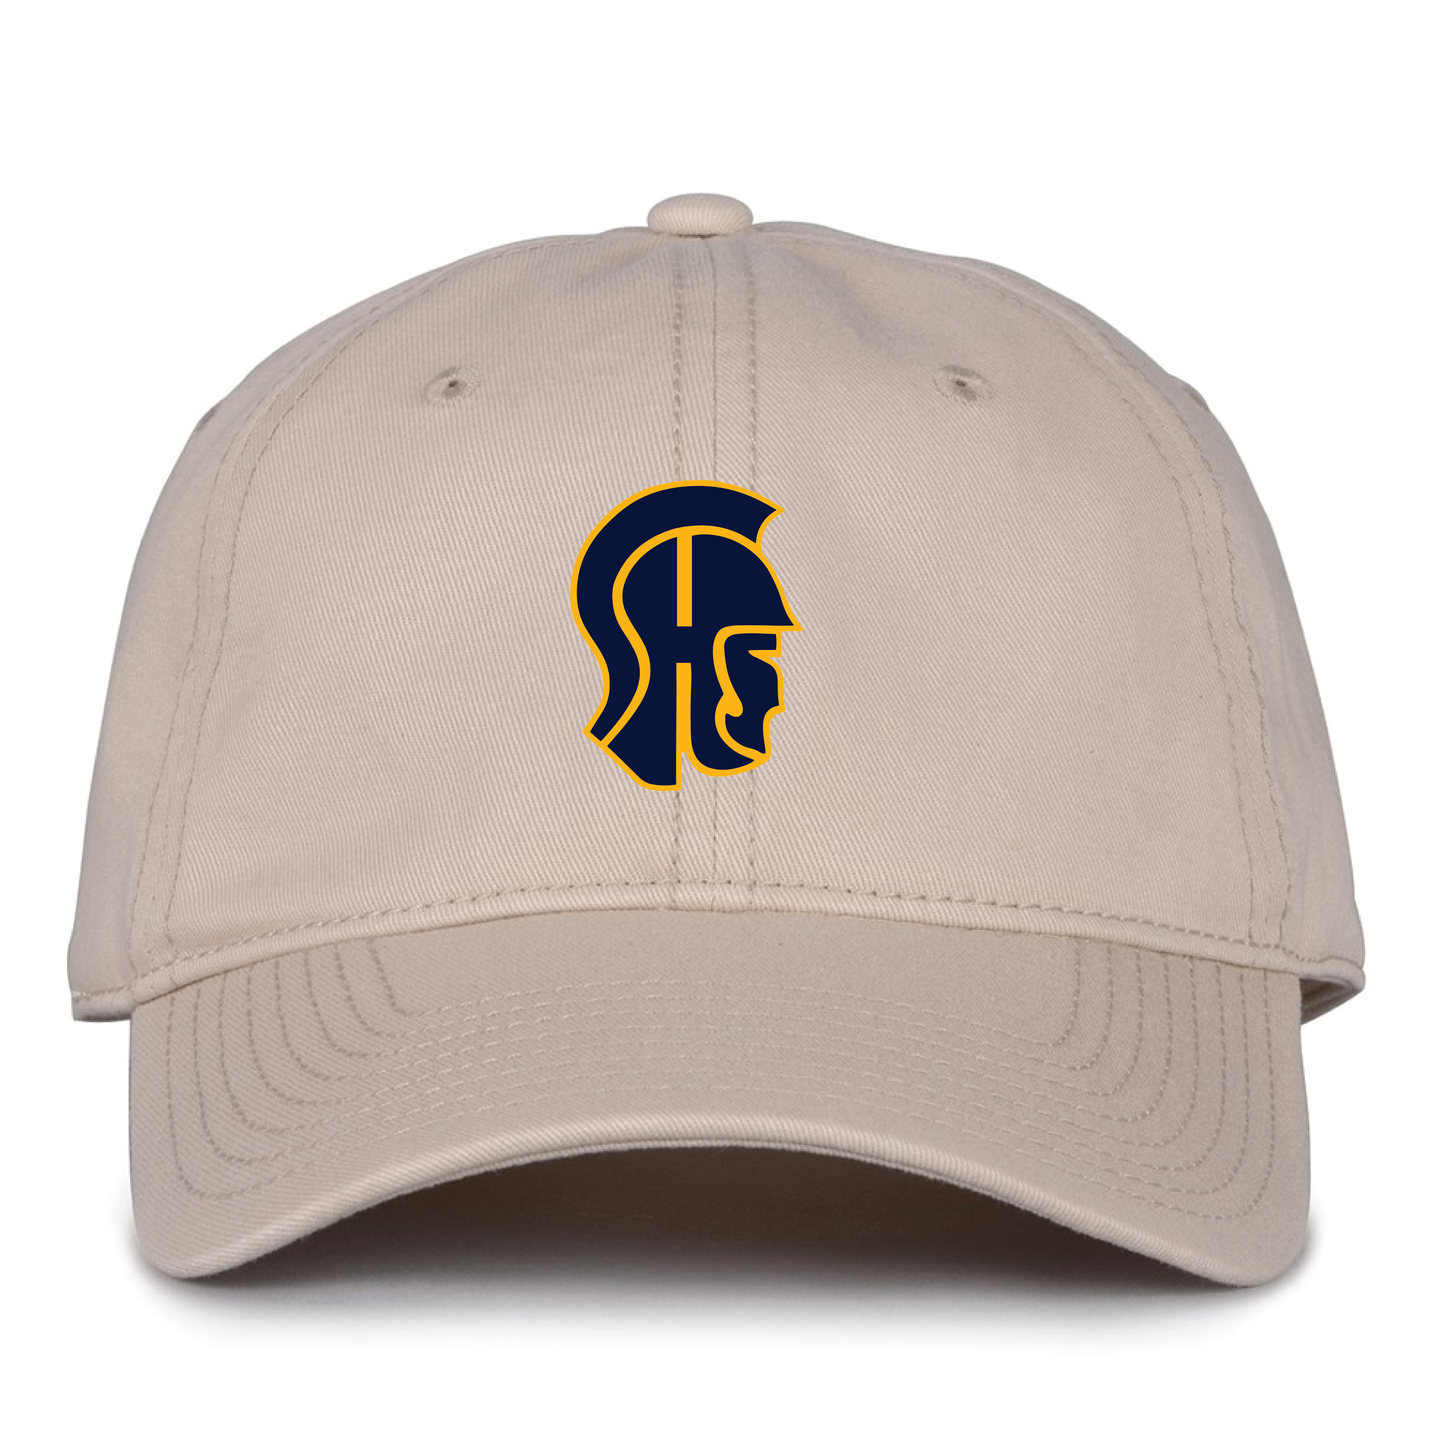 Hat: OSFA SHS Simsbury High School Trojan Head